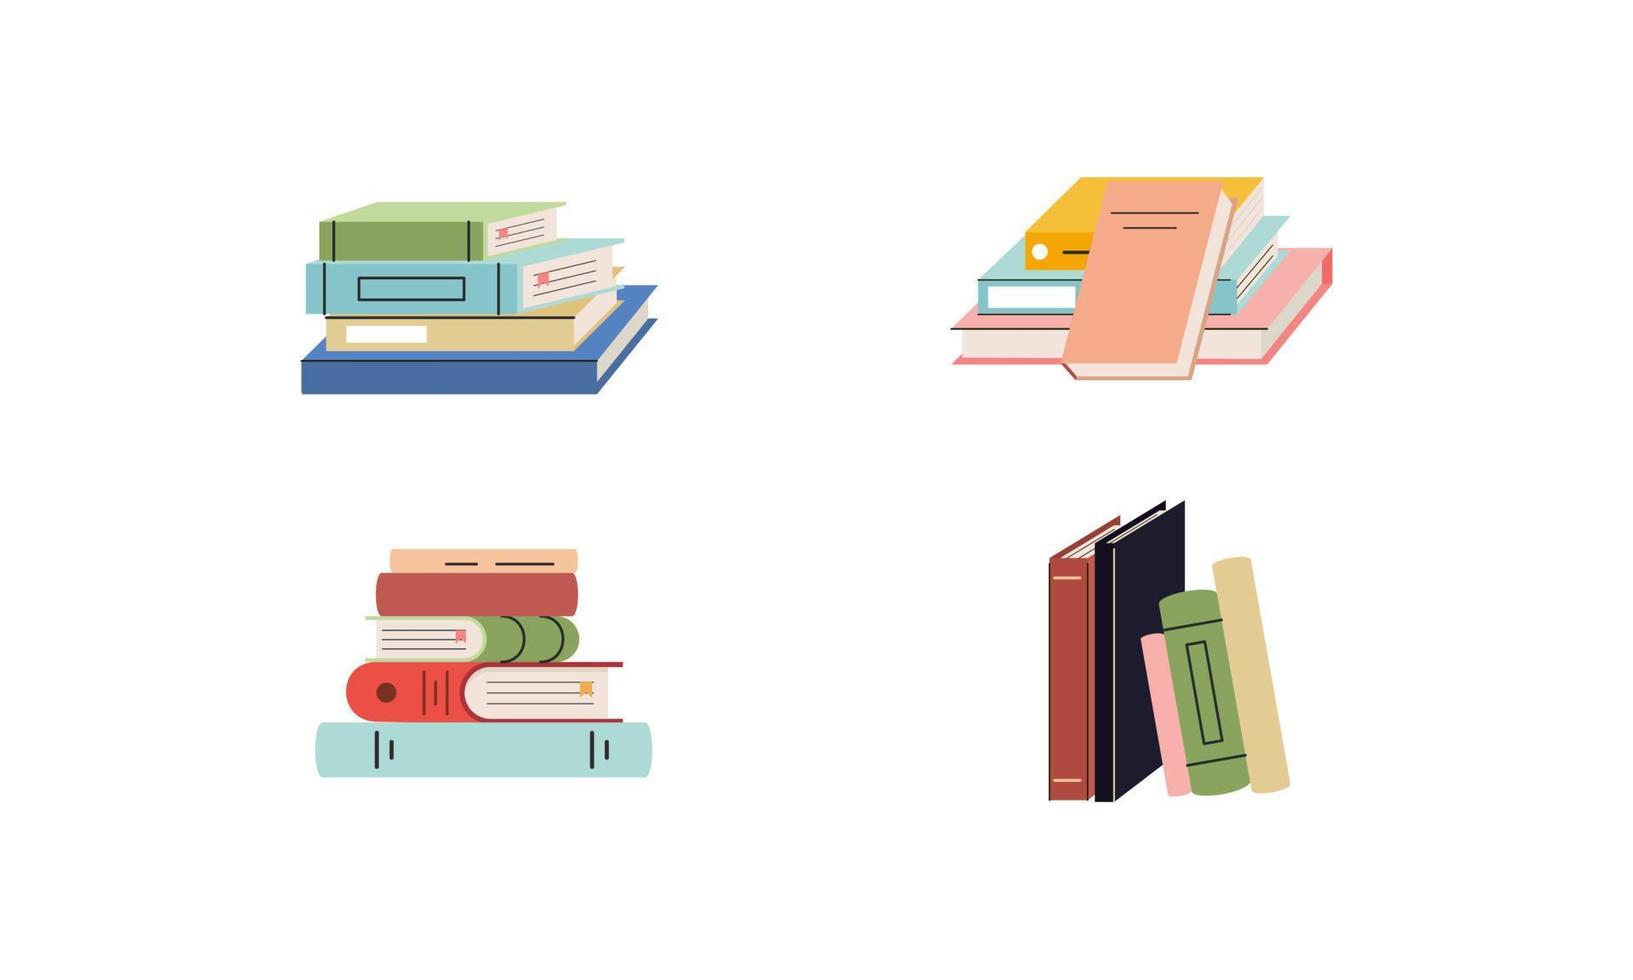 conjunto de libros para lectura, literatura, diccionarios, enciclopedias, planificadores con marcadores. vector